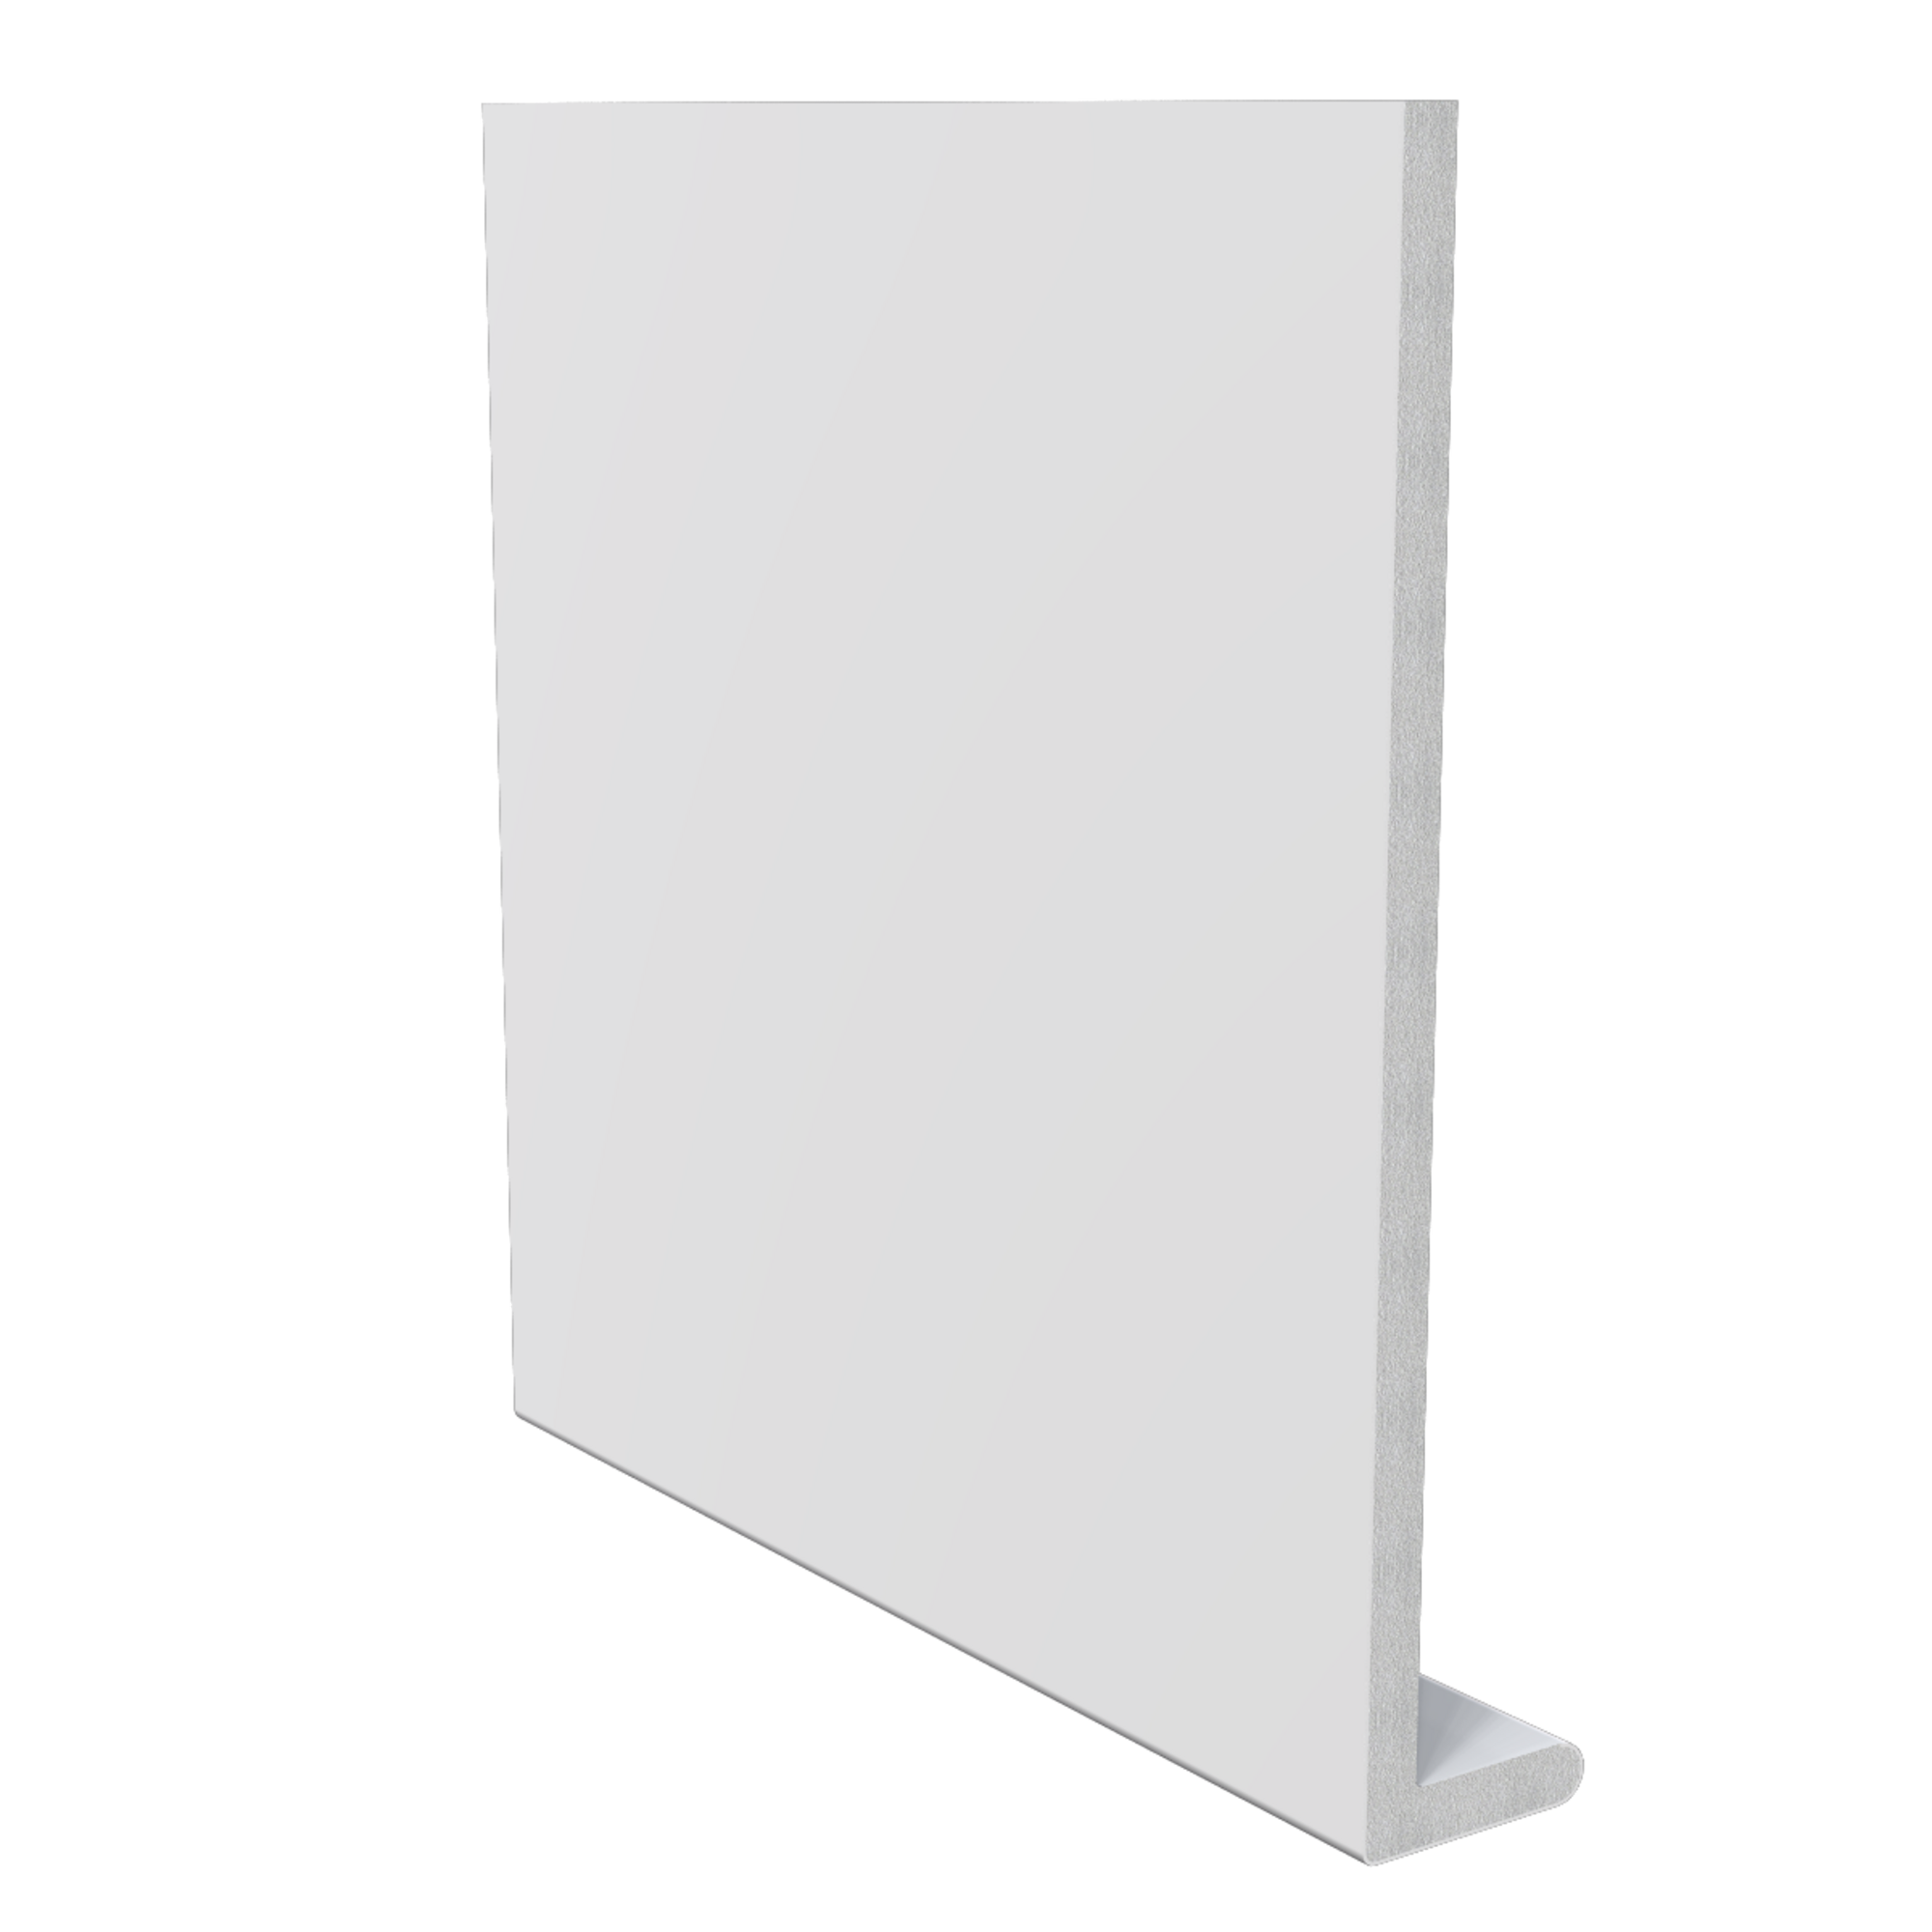 Panel frontal cuadrado de 300 x 17,5 cm x 8 mm blanca